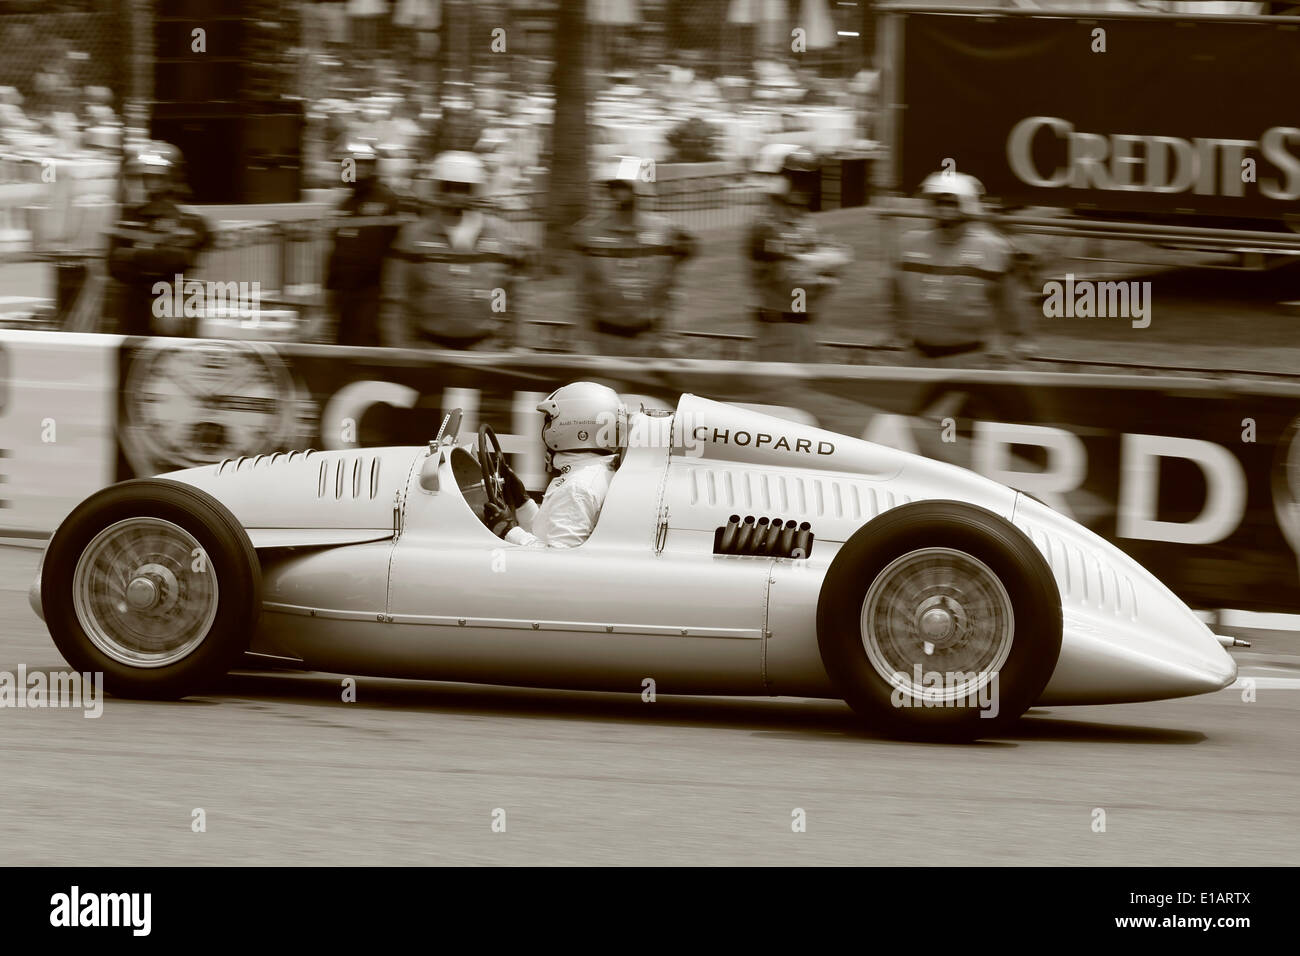 Auto Union Type C racing car, Silver Arrow, replica, 9th Grand Prix de Monaco Historique, Principality of Monaco Stock Photo